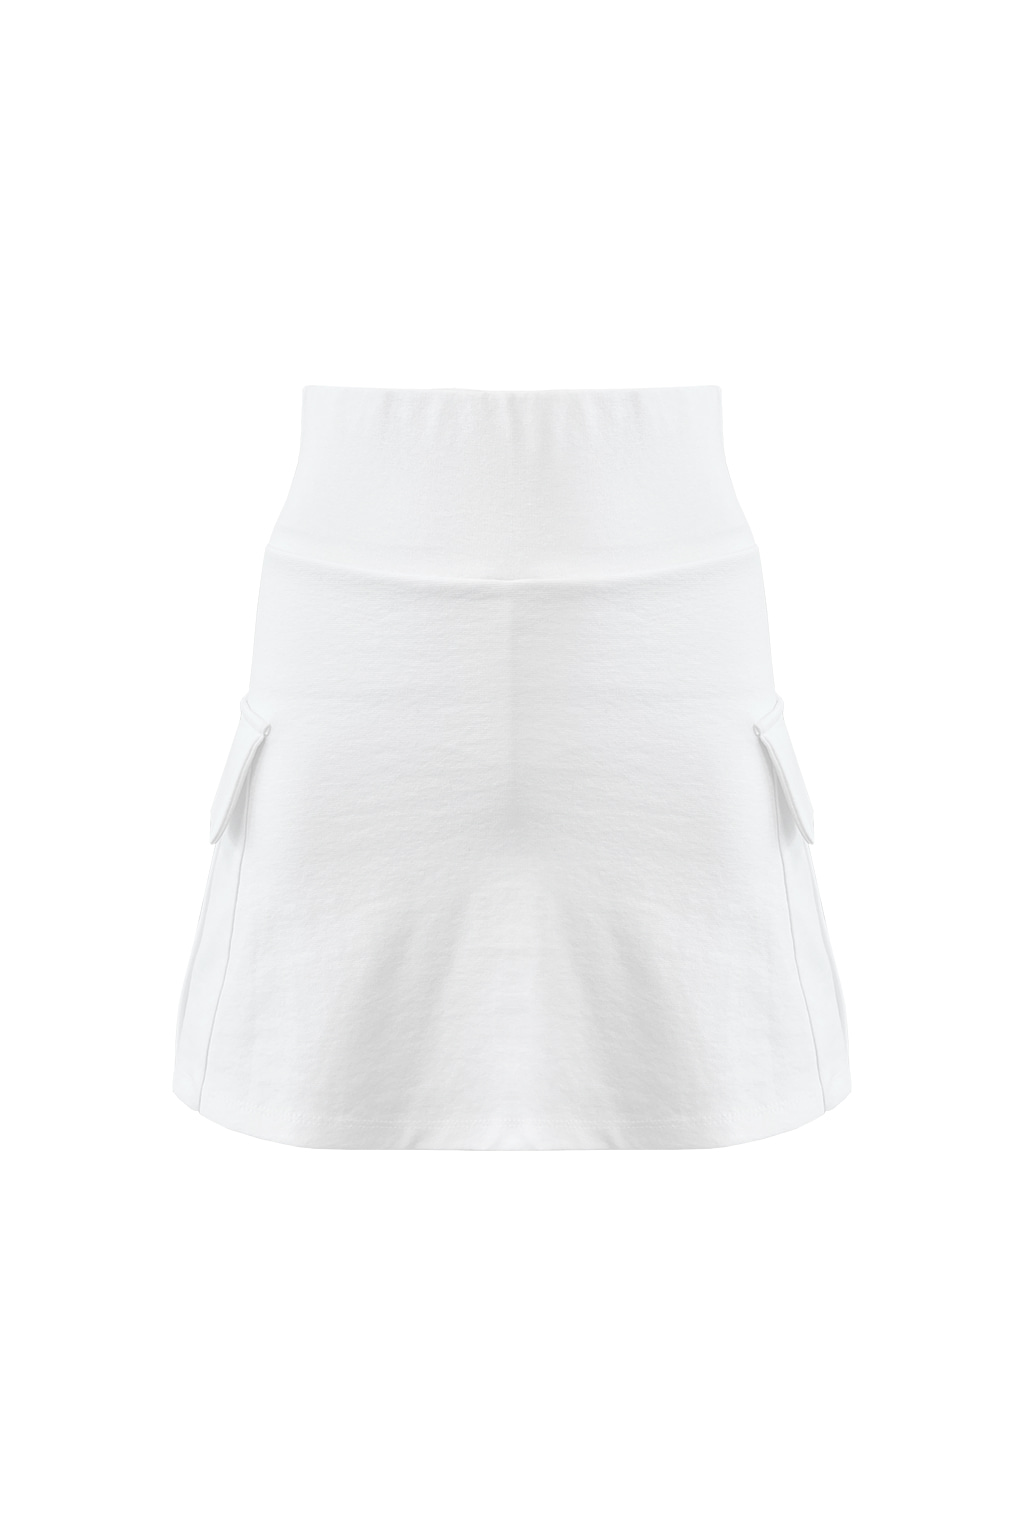 H logo cargo skirt white